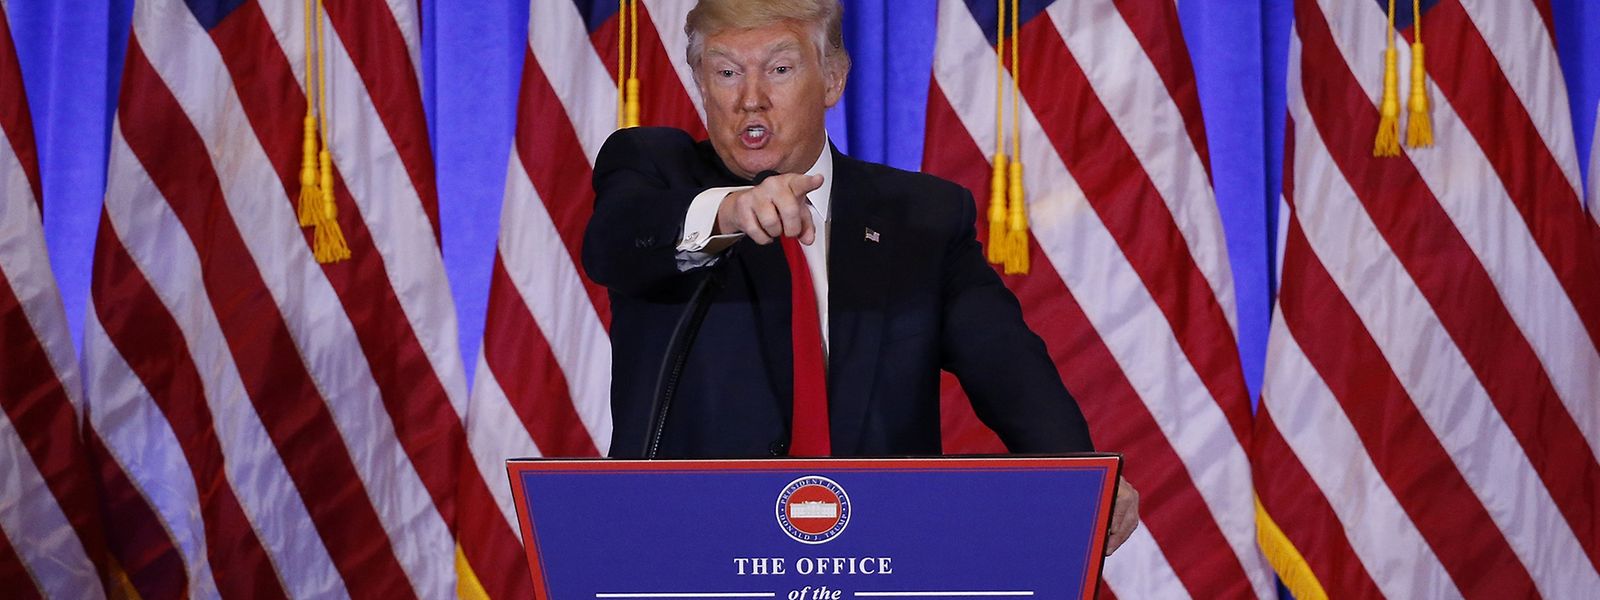 "Pressekonferenzen sind eine Menge Arbeit" - Donald Trump will weiter twittern. 